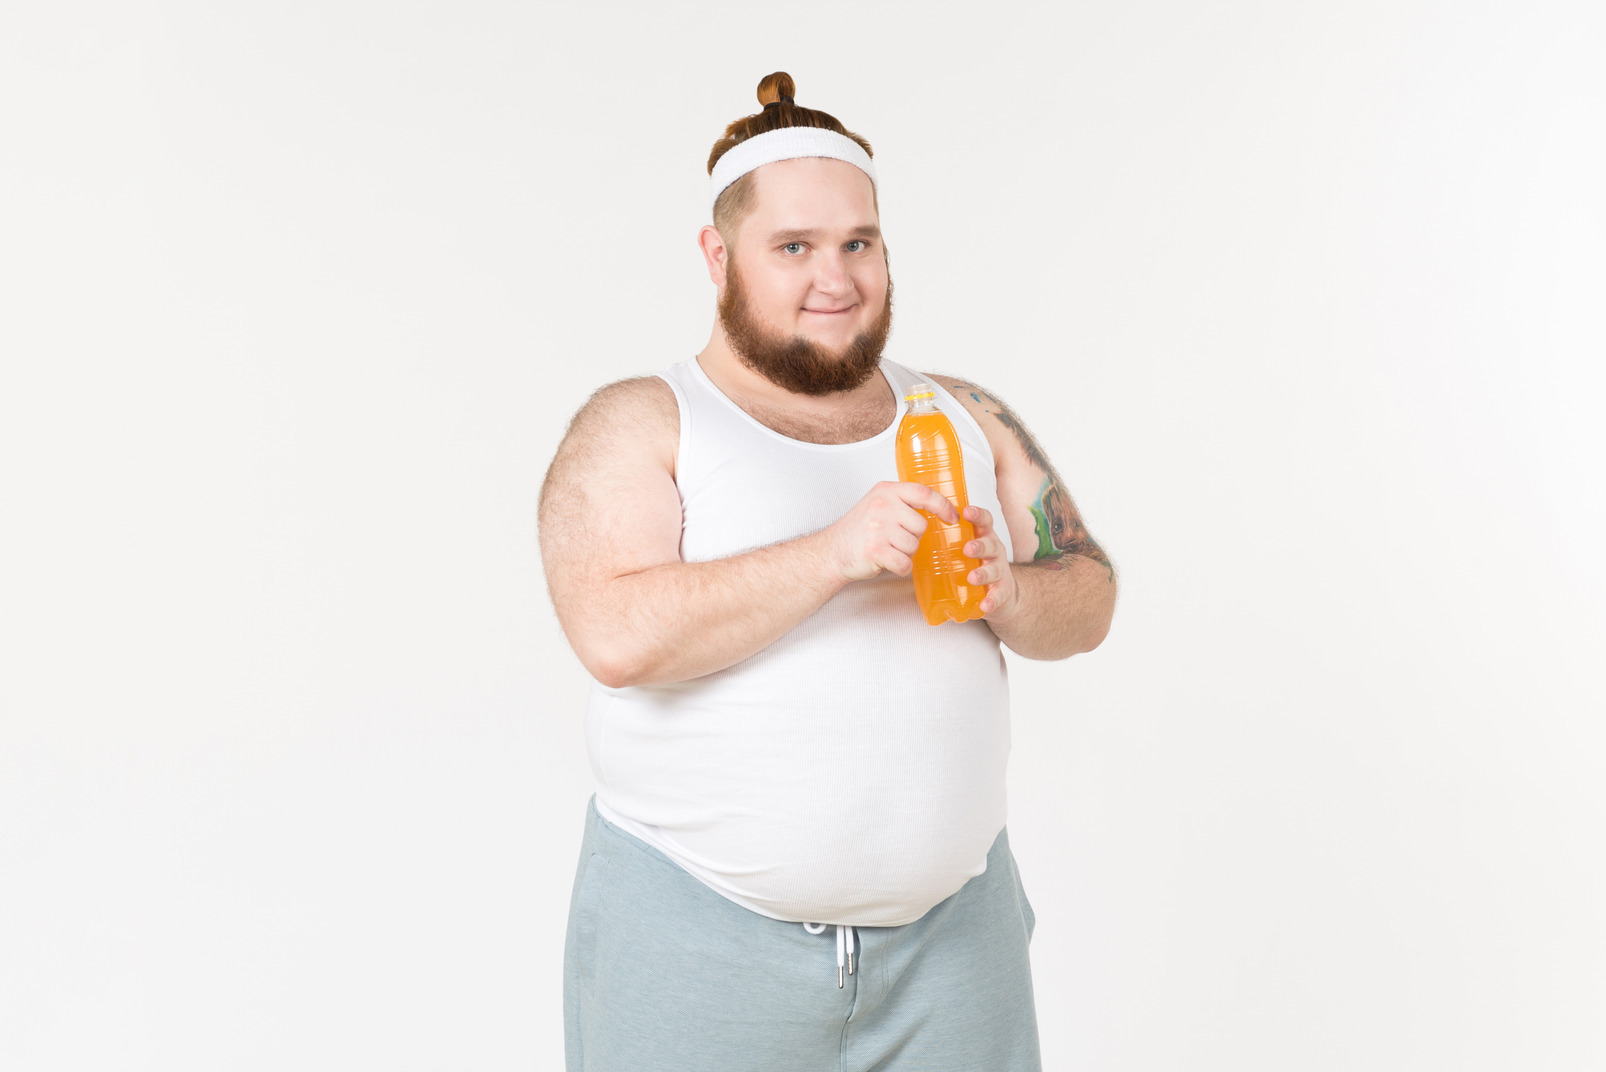 A fat man in sportswear holding a bottle of orange drink